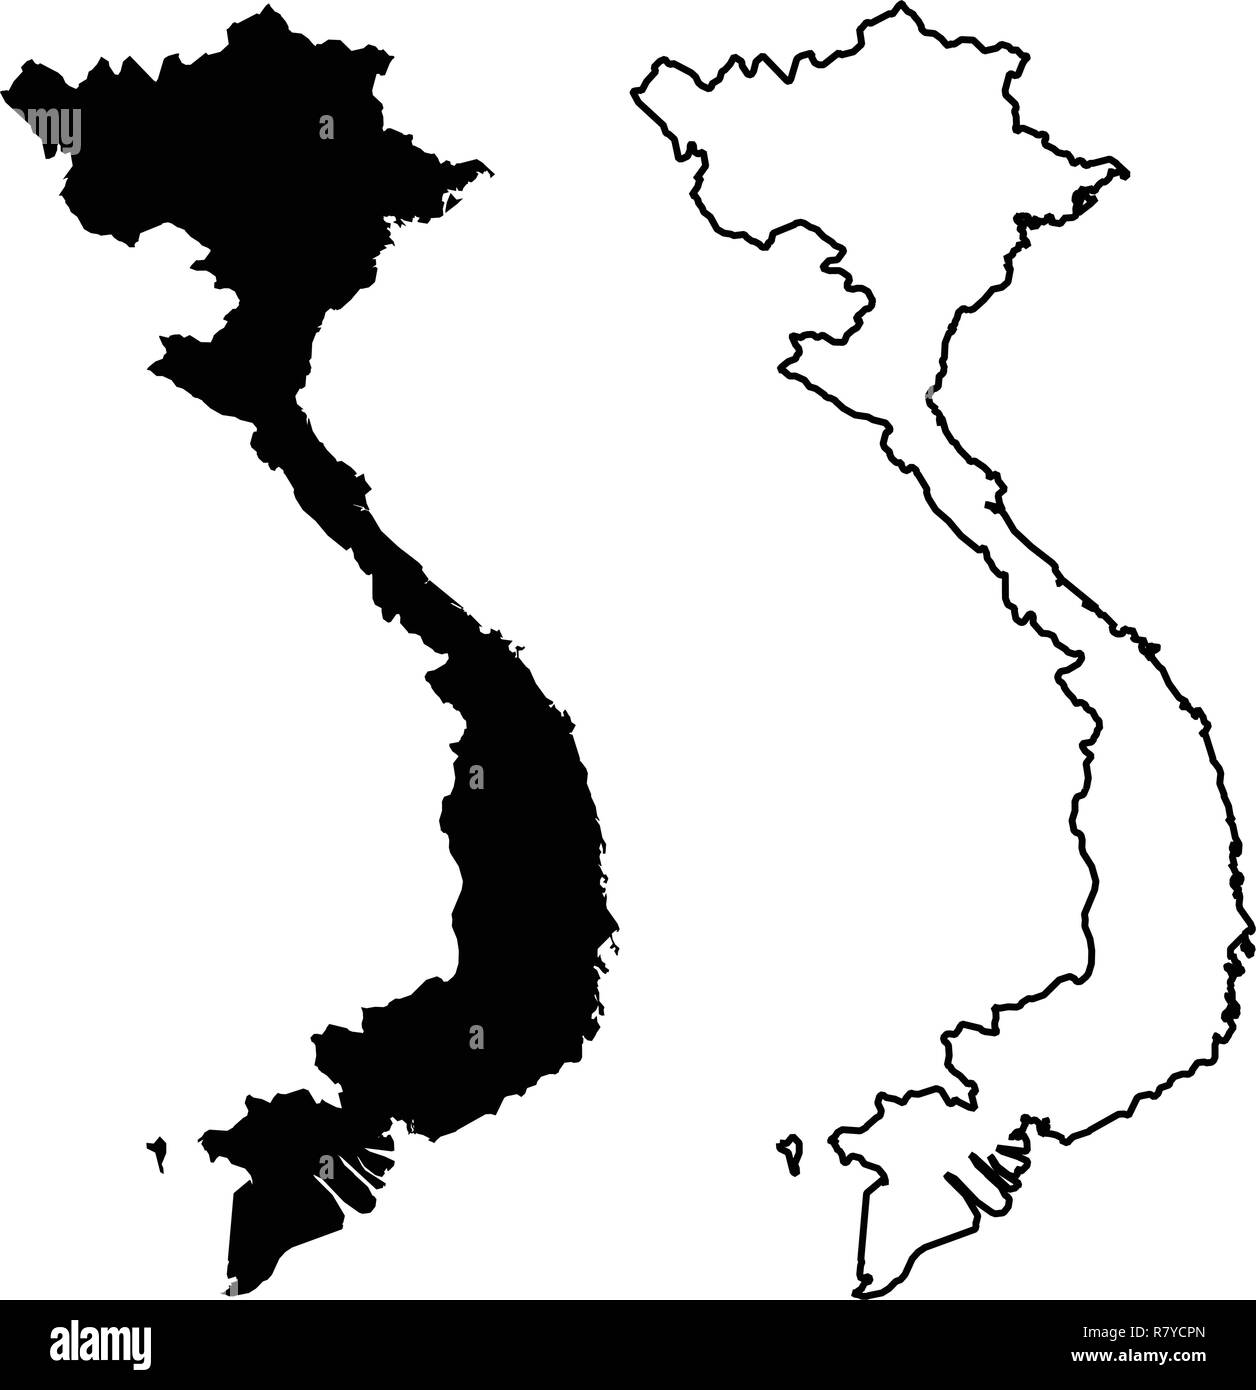 Simple (seulement les coins pointus) Carte - République socialiste du Viêt Nam dessin vectoriel. Projection de Mercator. Rempli et contours version. Illustration de Vecteur